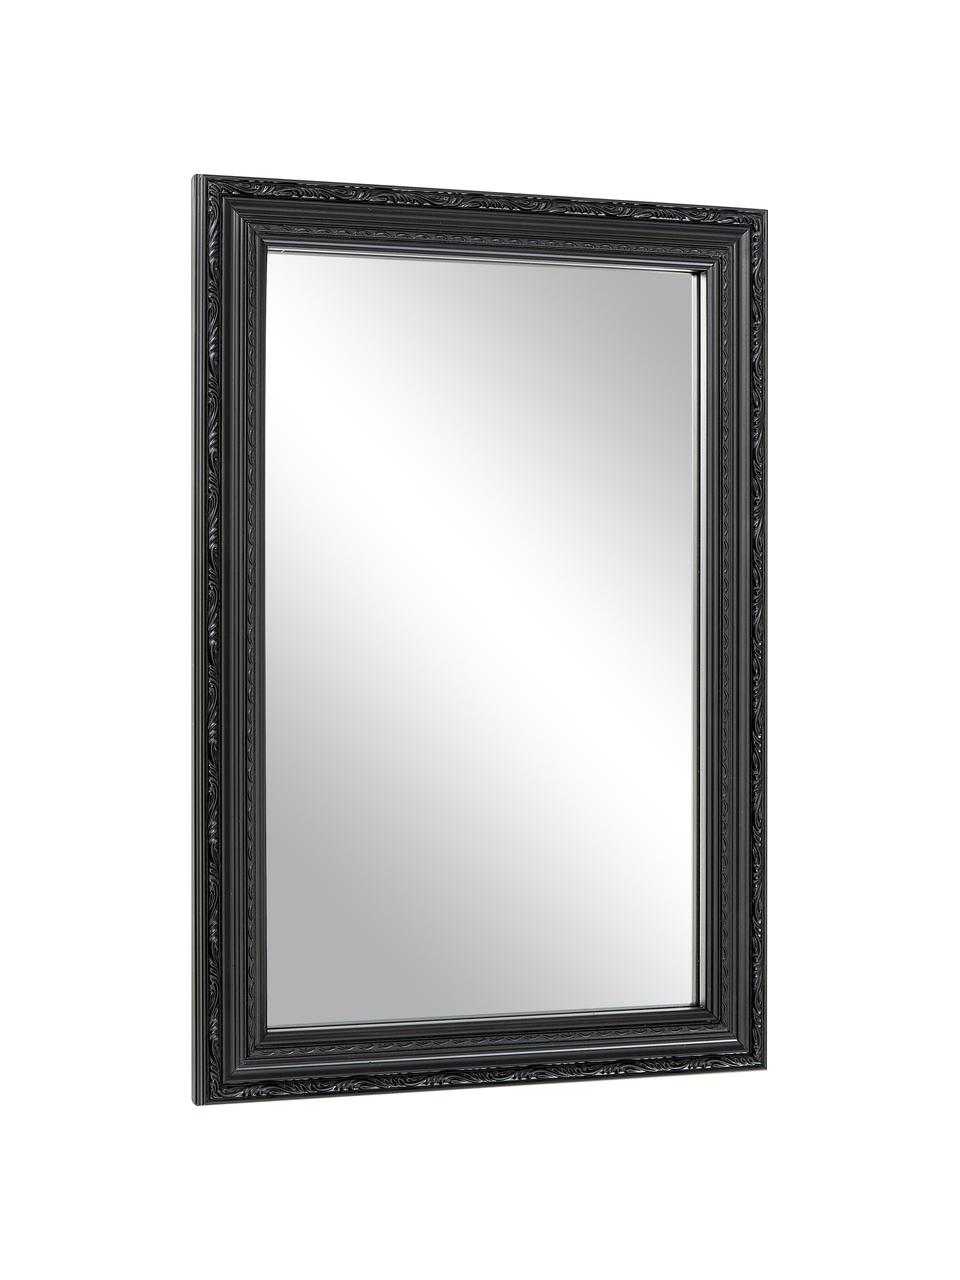 Barokní nástěnné zrcadlo Muriel, Černá, Š 40 cm, V 60 cm